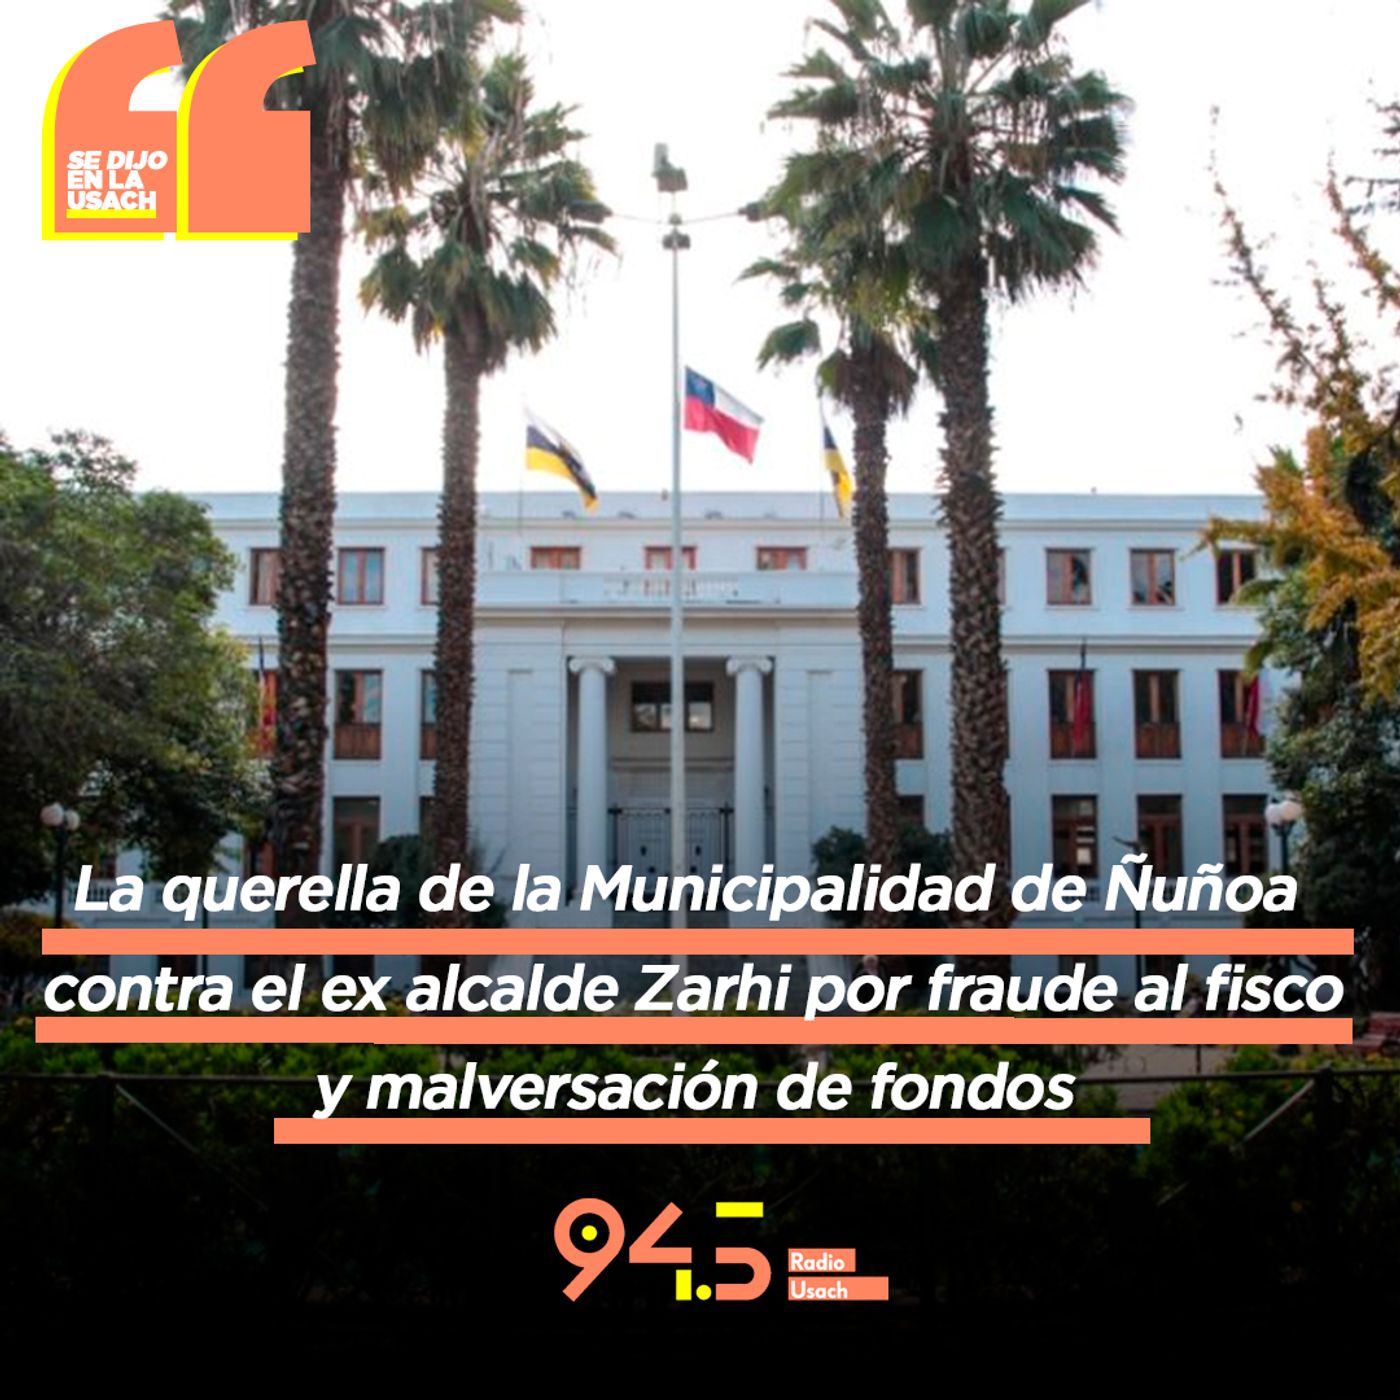 La querella de la Municipalidad de Ñuñoa contra el ex alcalde Zahri por fraude al fisco y malversación de fondos